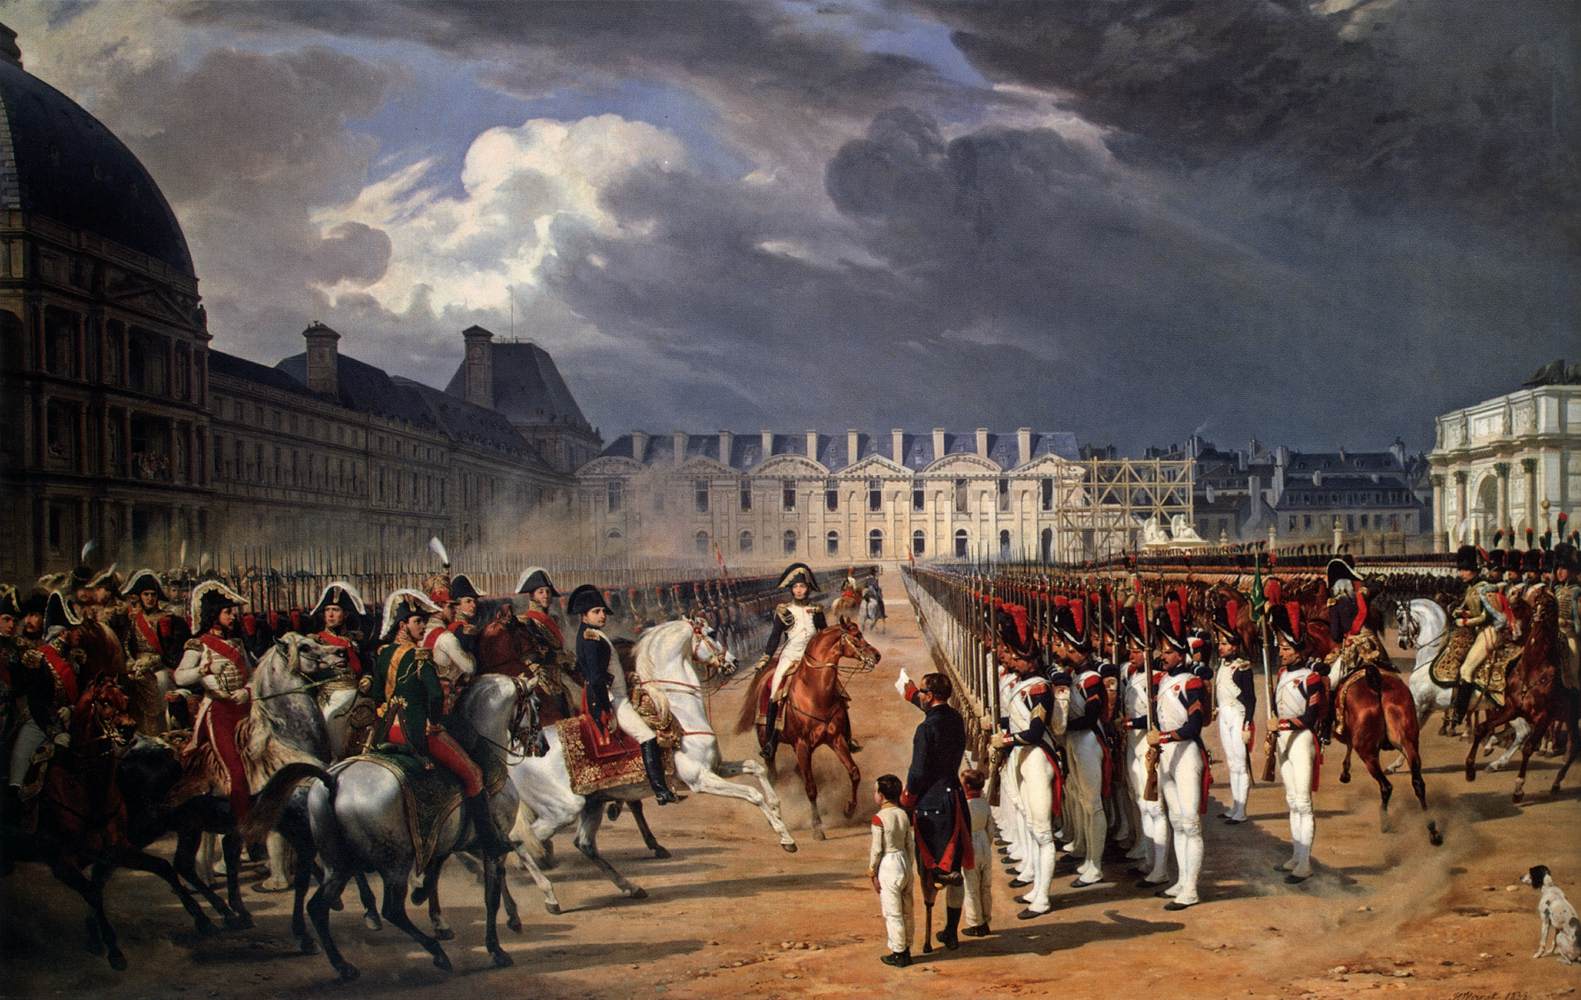 Een ongeldige die een verzoekschrift indient aan Napoleon in een parade op de binnenplaats van het paleis van de TUBLERías